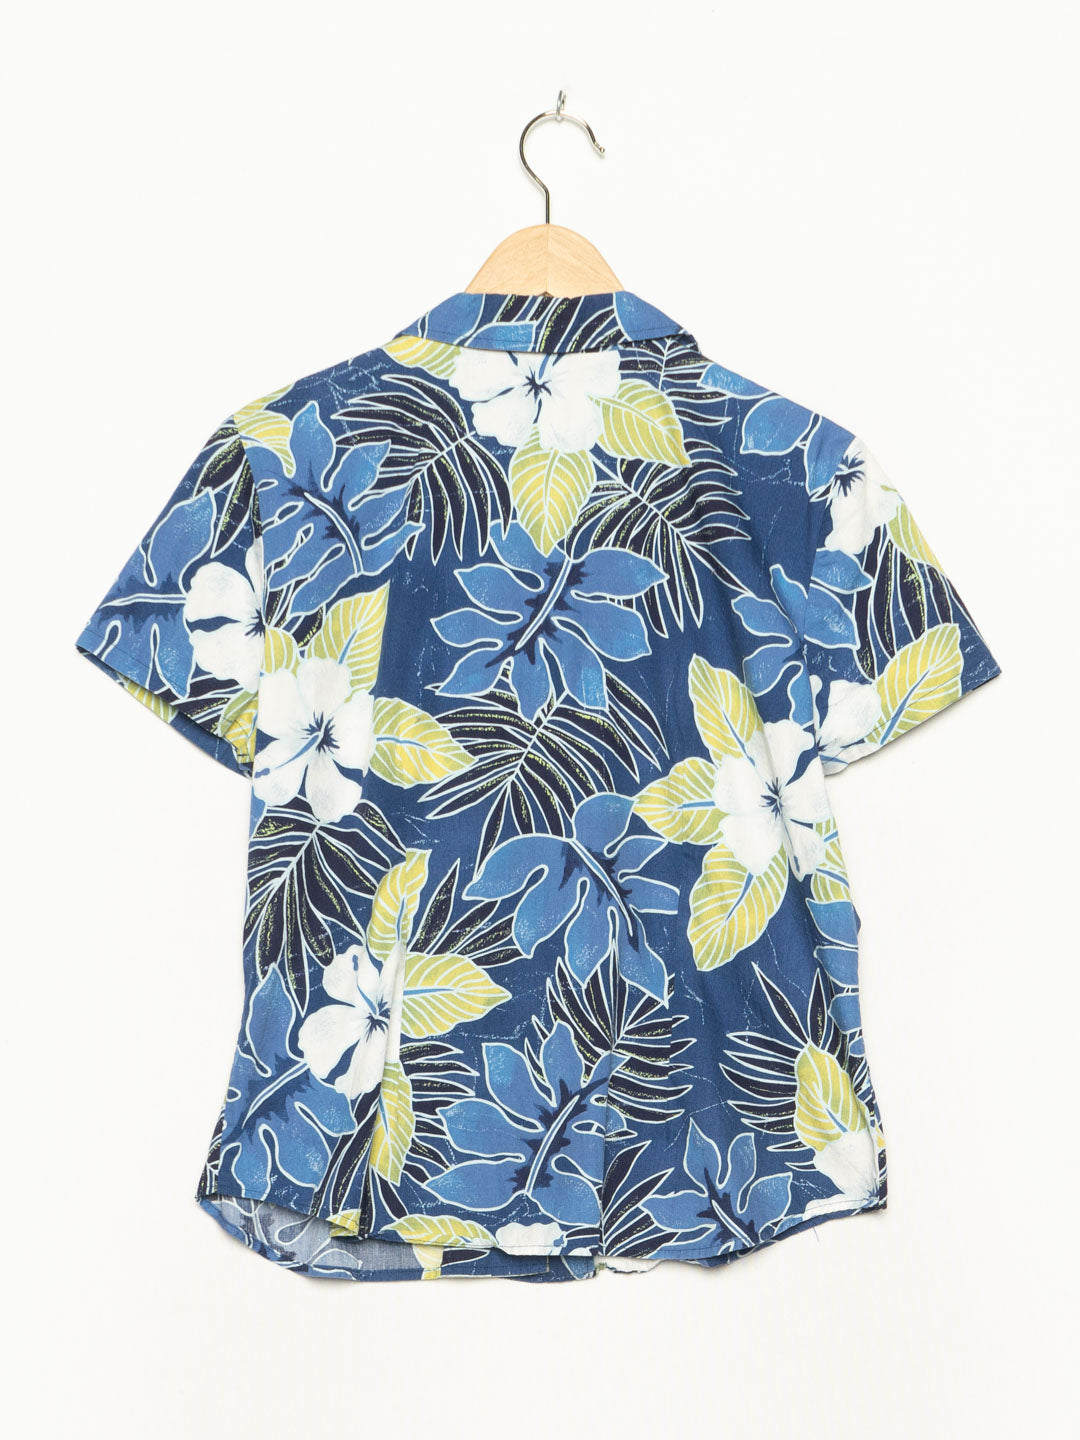 Sag Harbor Blue Hawaiian Shirt - StirTshirt